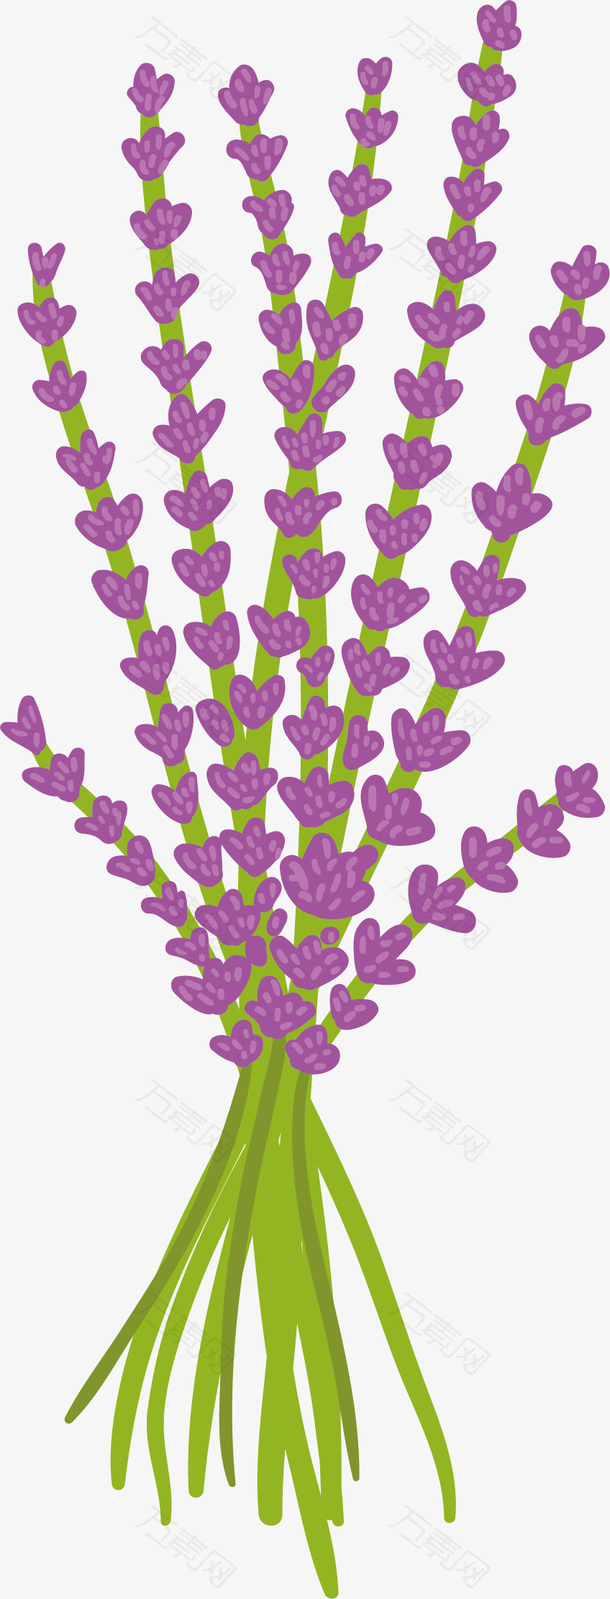 紫色薰衣草花束矢量